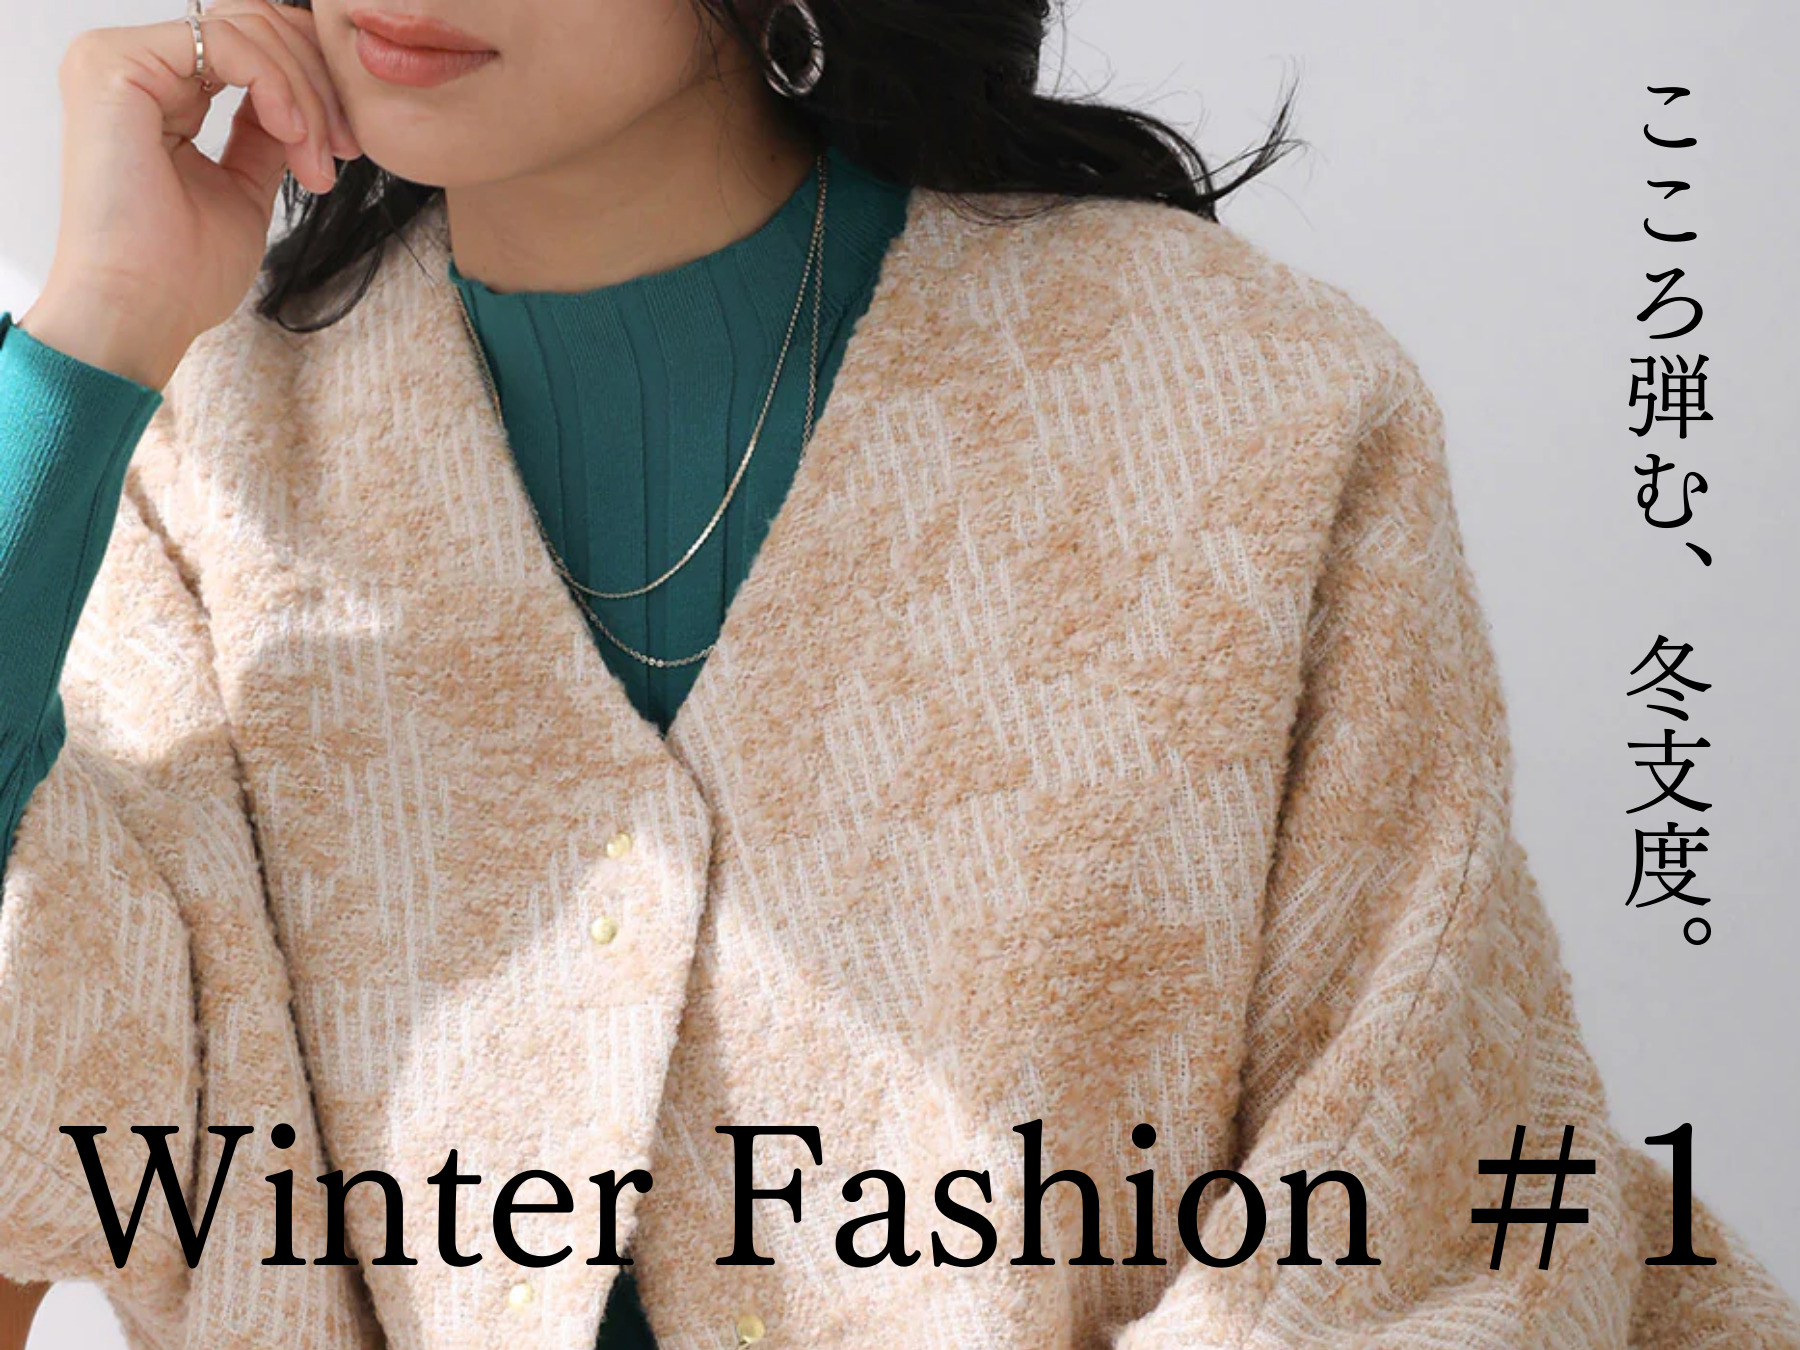 Winter Fashion #1 こころ弾む、冬支度。